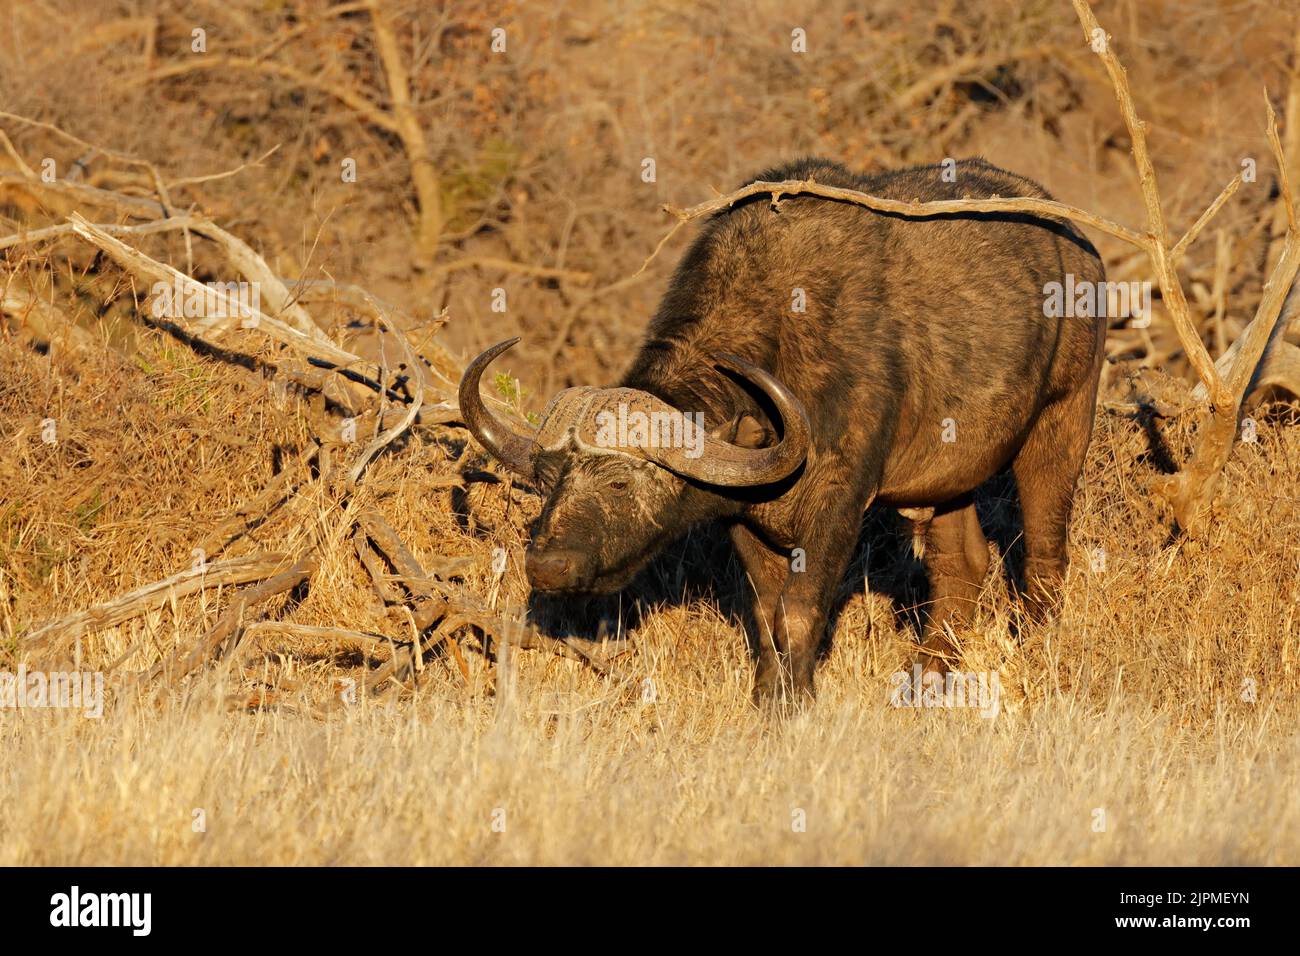 Un buffle africain (Syncerus caffer) dans un habitat naturel, parc national de Mokala, Afrique du Sud Banque D'Images